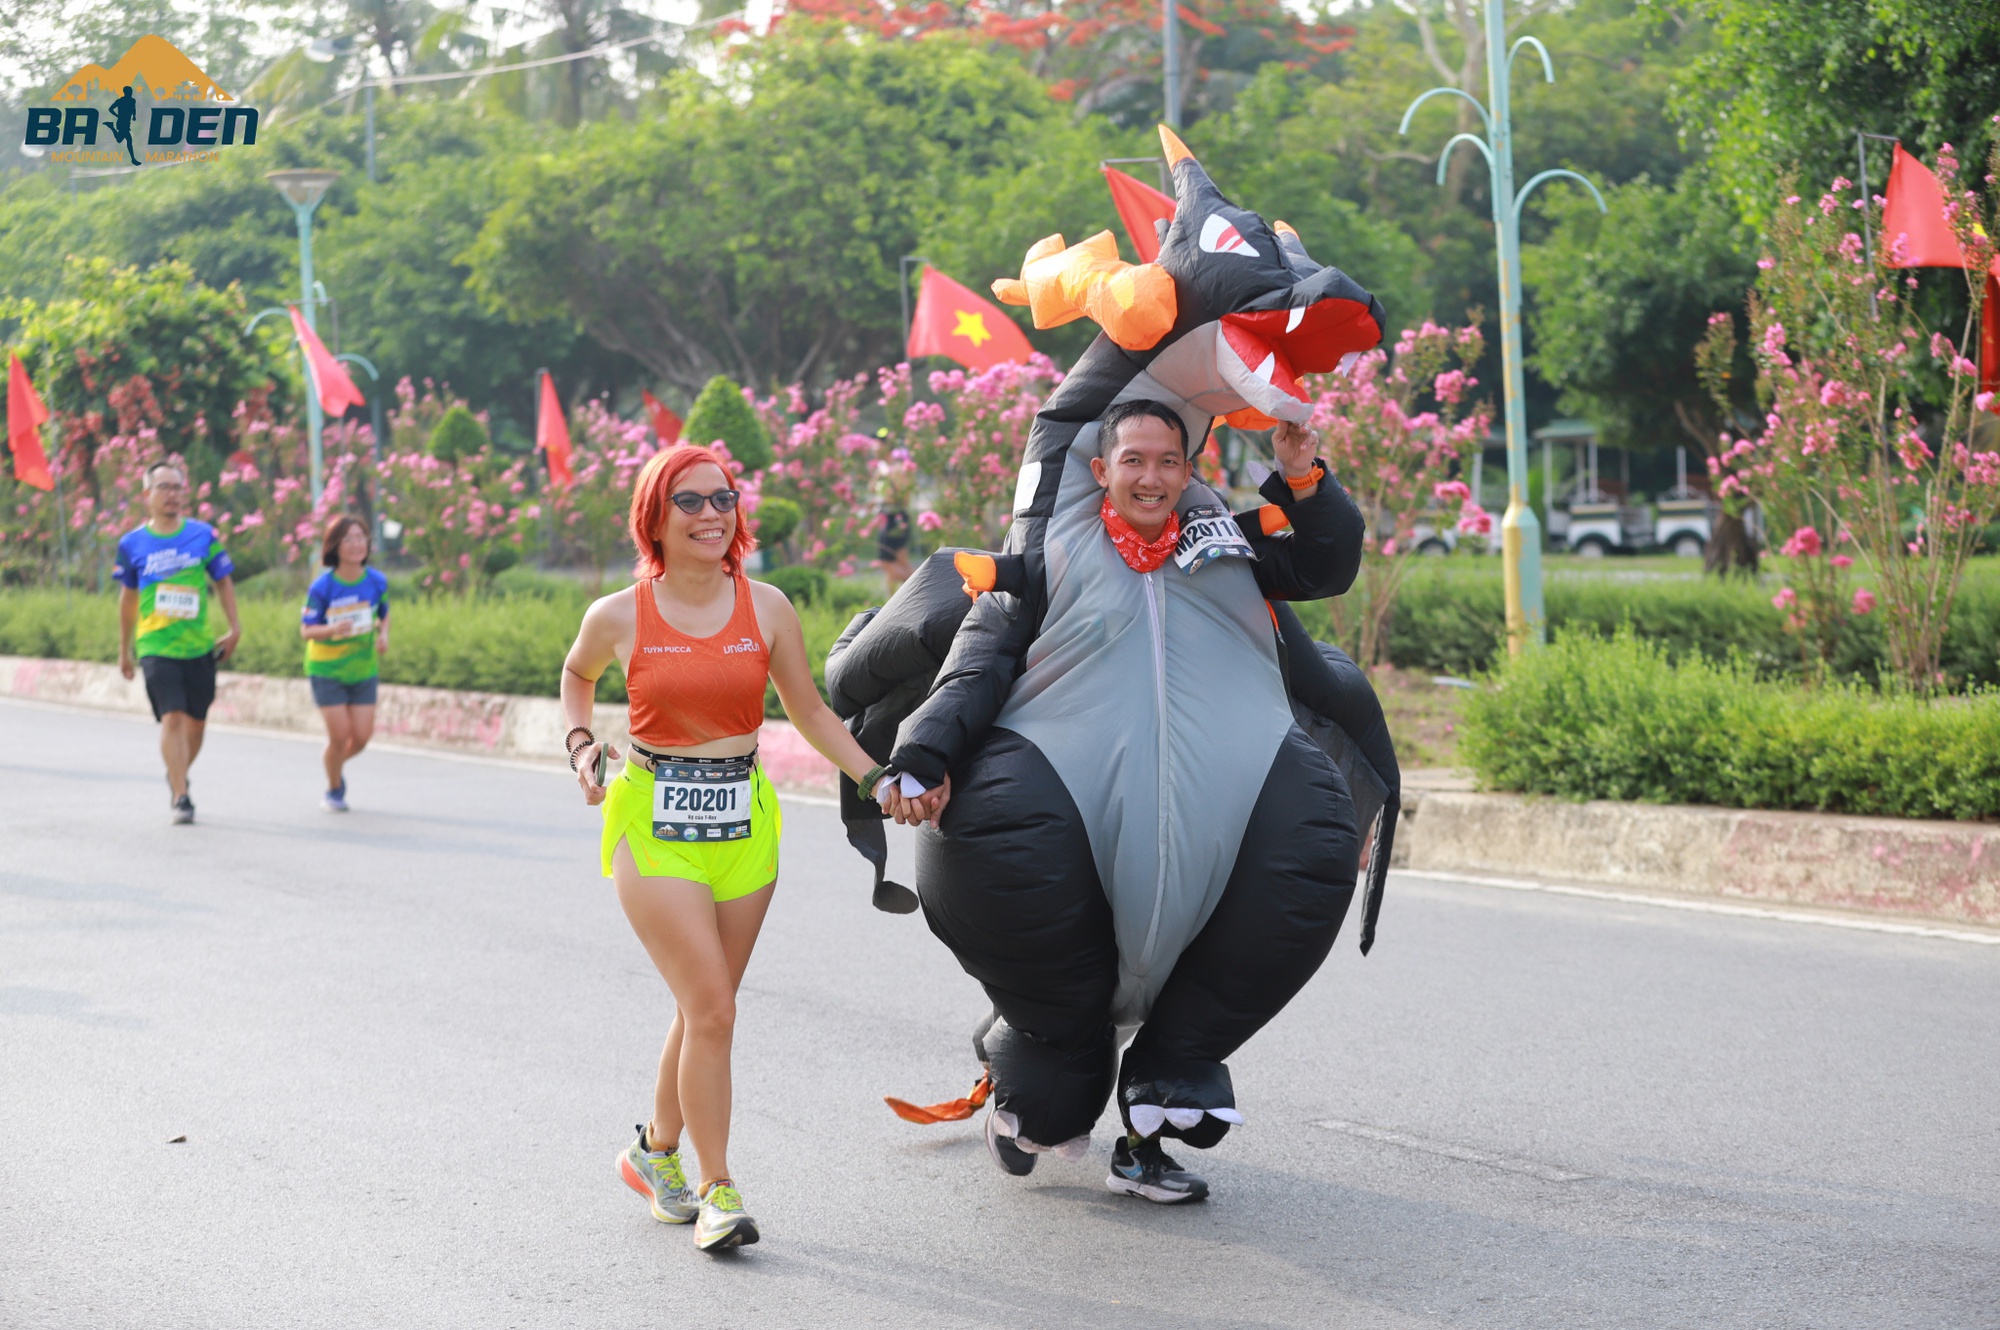 Muôn kiểu cosplay lạ mắt chỉ có ở đường chạy marathon Tây Ninh - Ảnh 2.